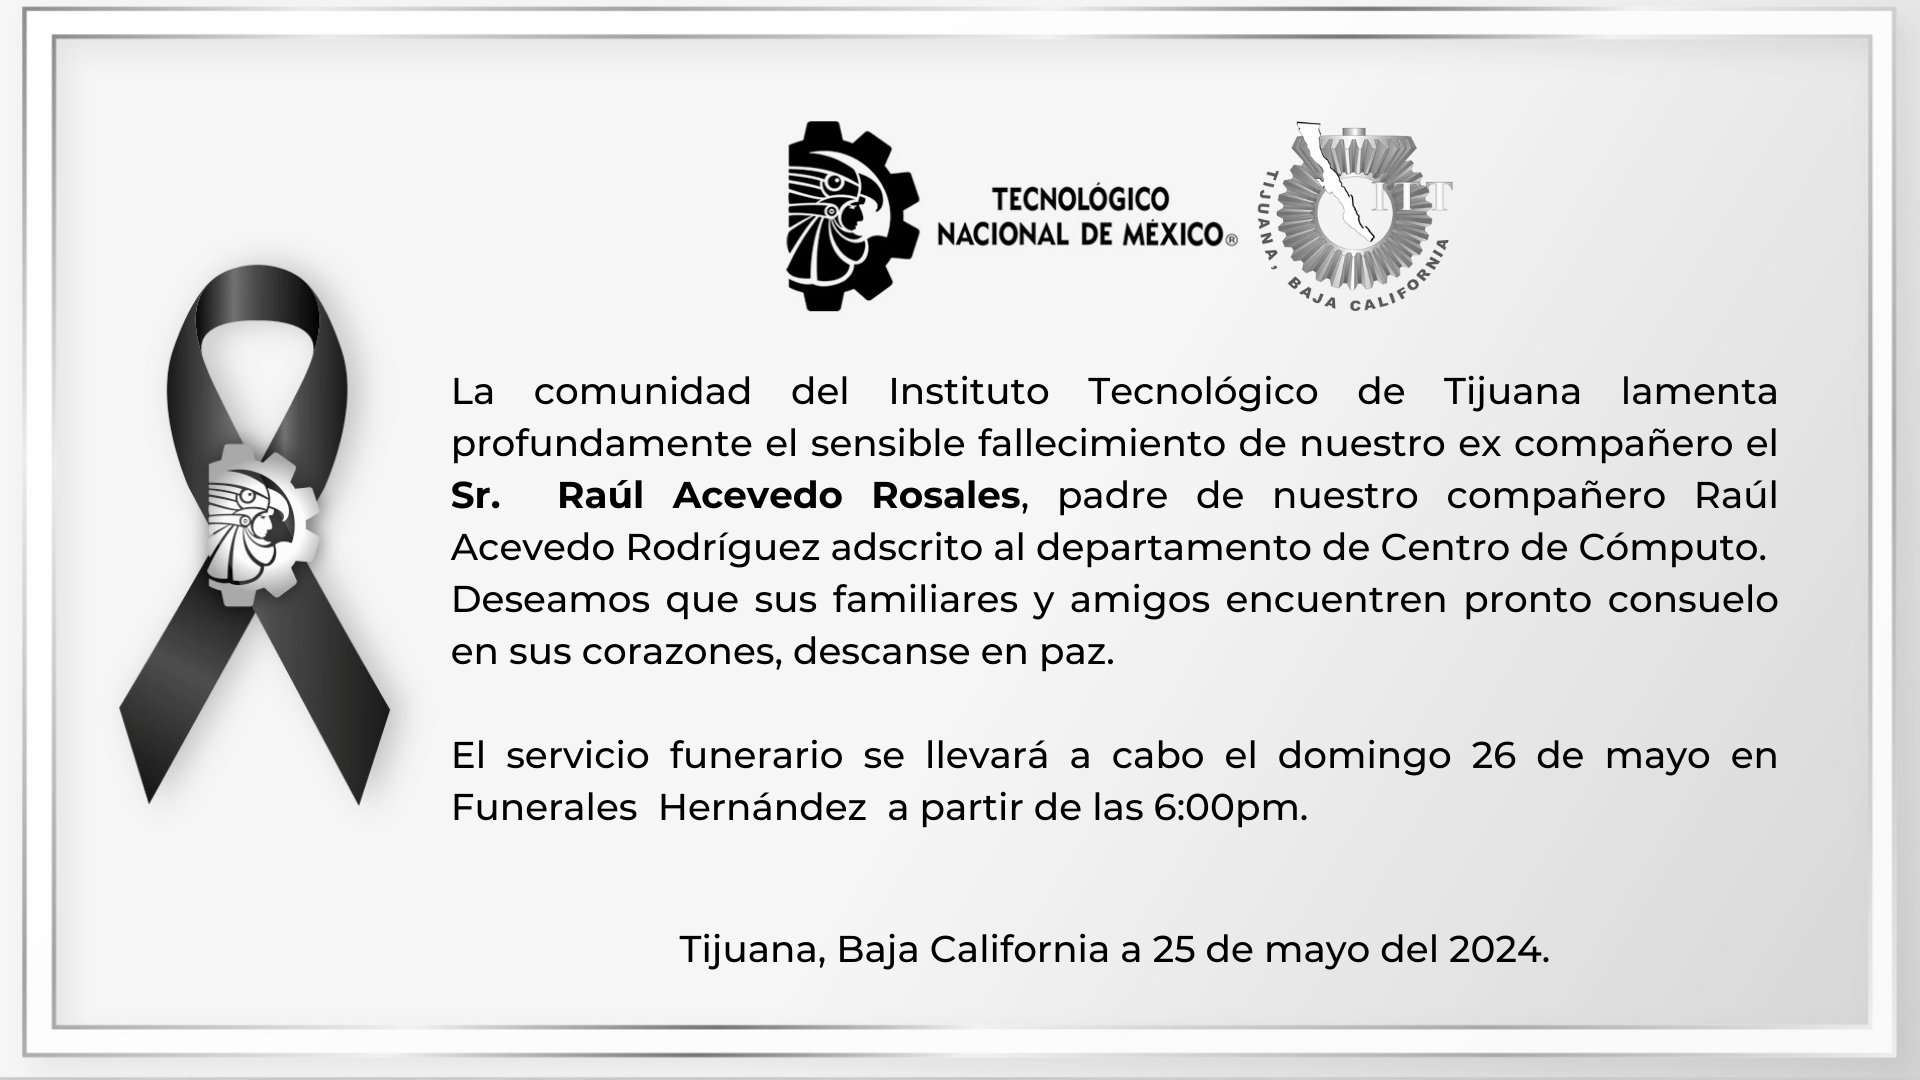 La comunidad del Instituto Tecnológico de Tijuana lamenta profundamente el sensible fallecimiento de nuestro ex compañero el Sr. Raúl Acevedo Rosales